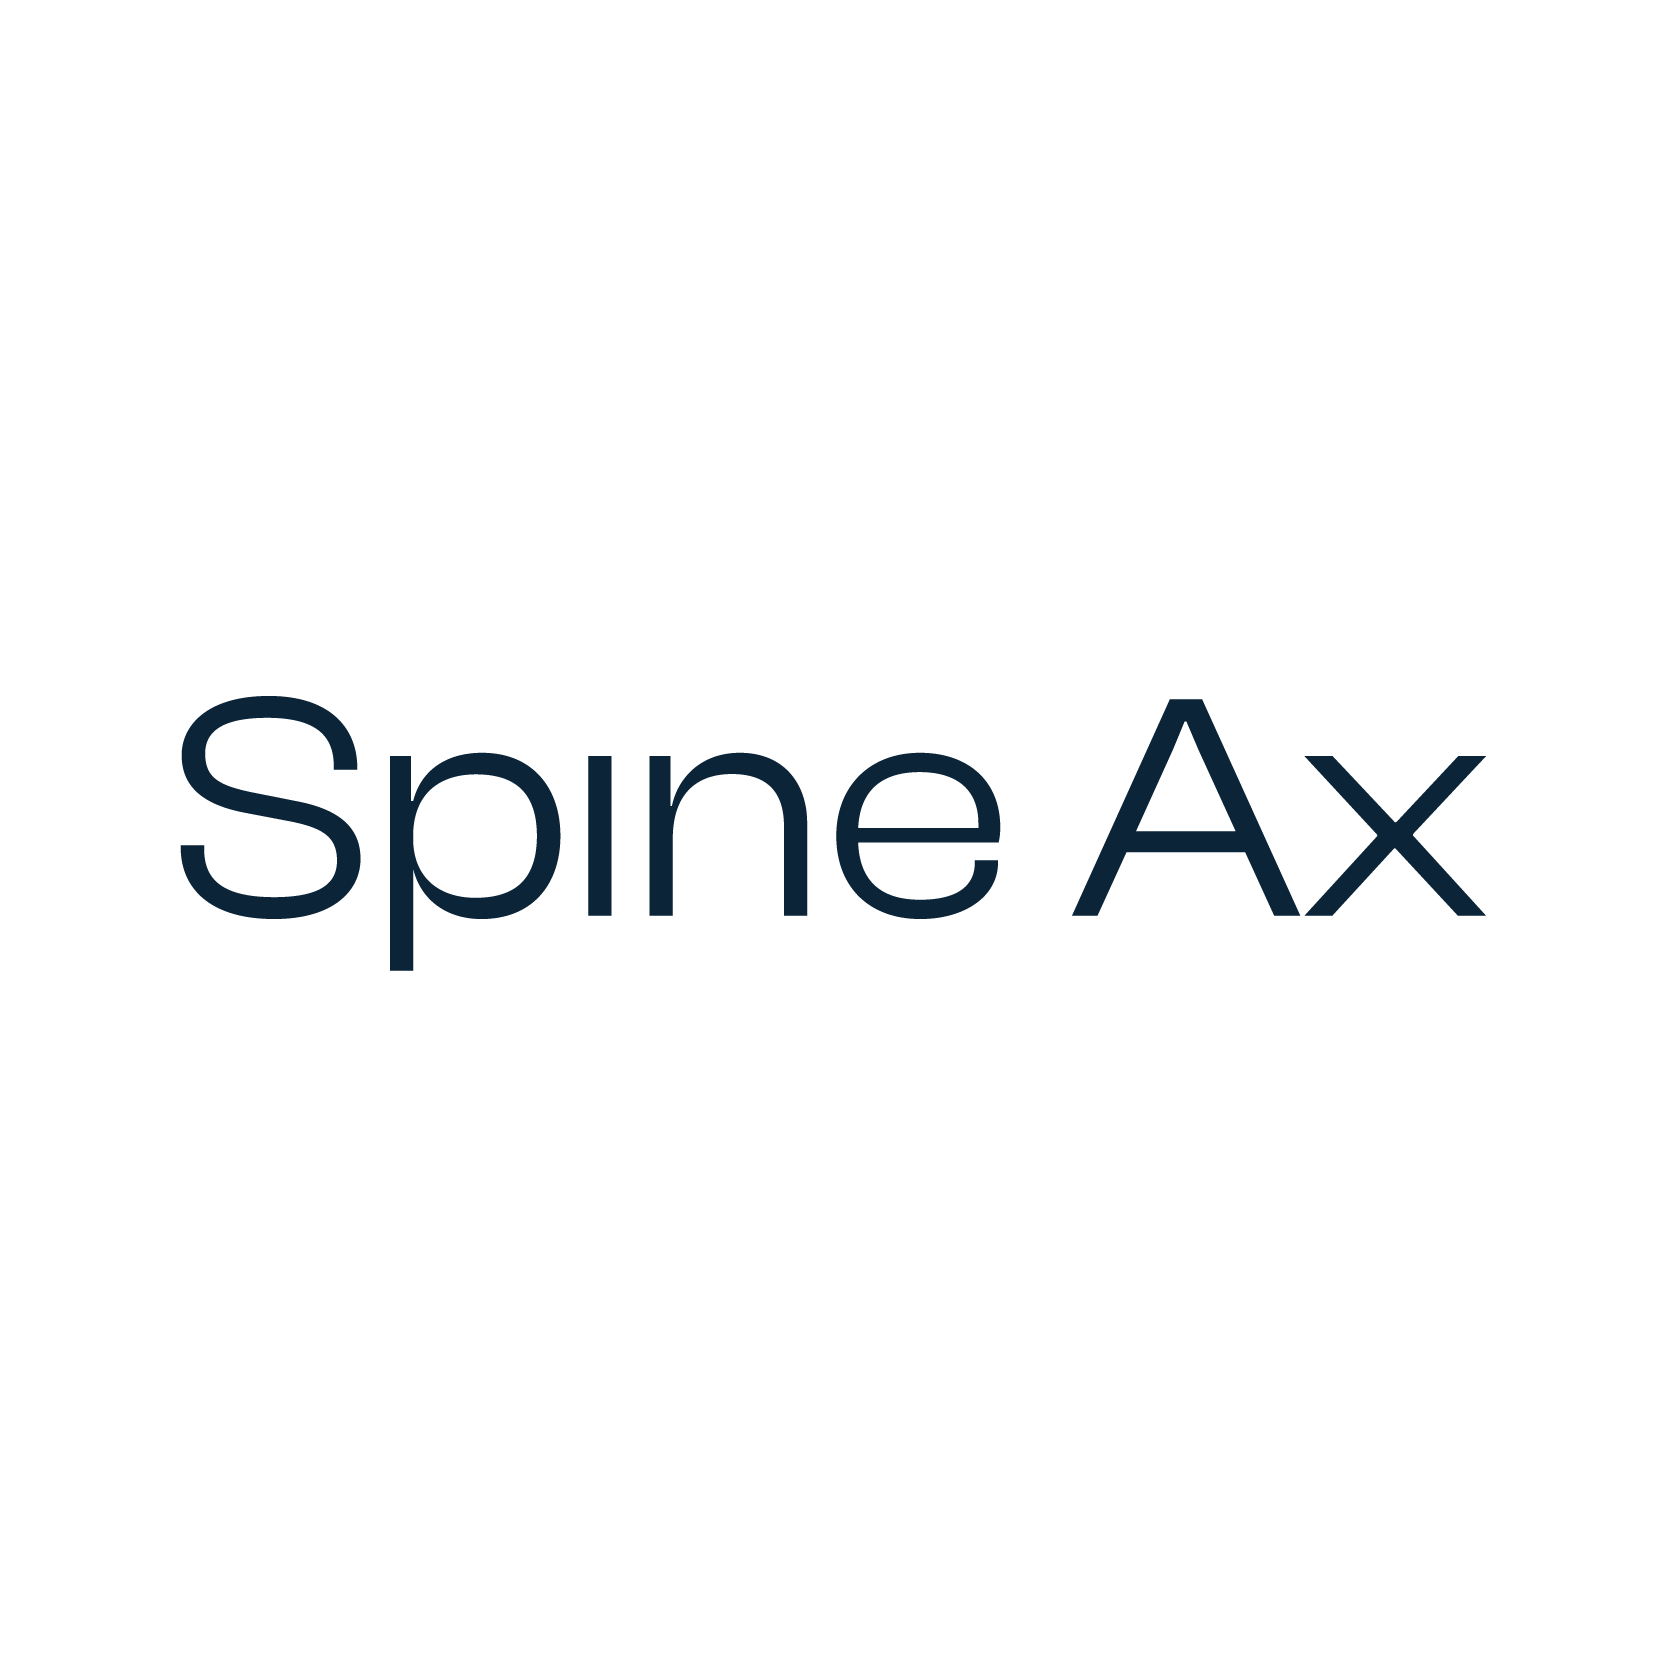 Spine Ax